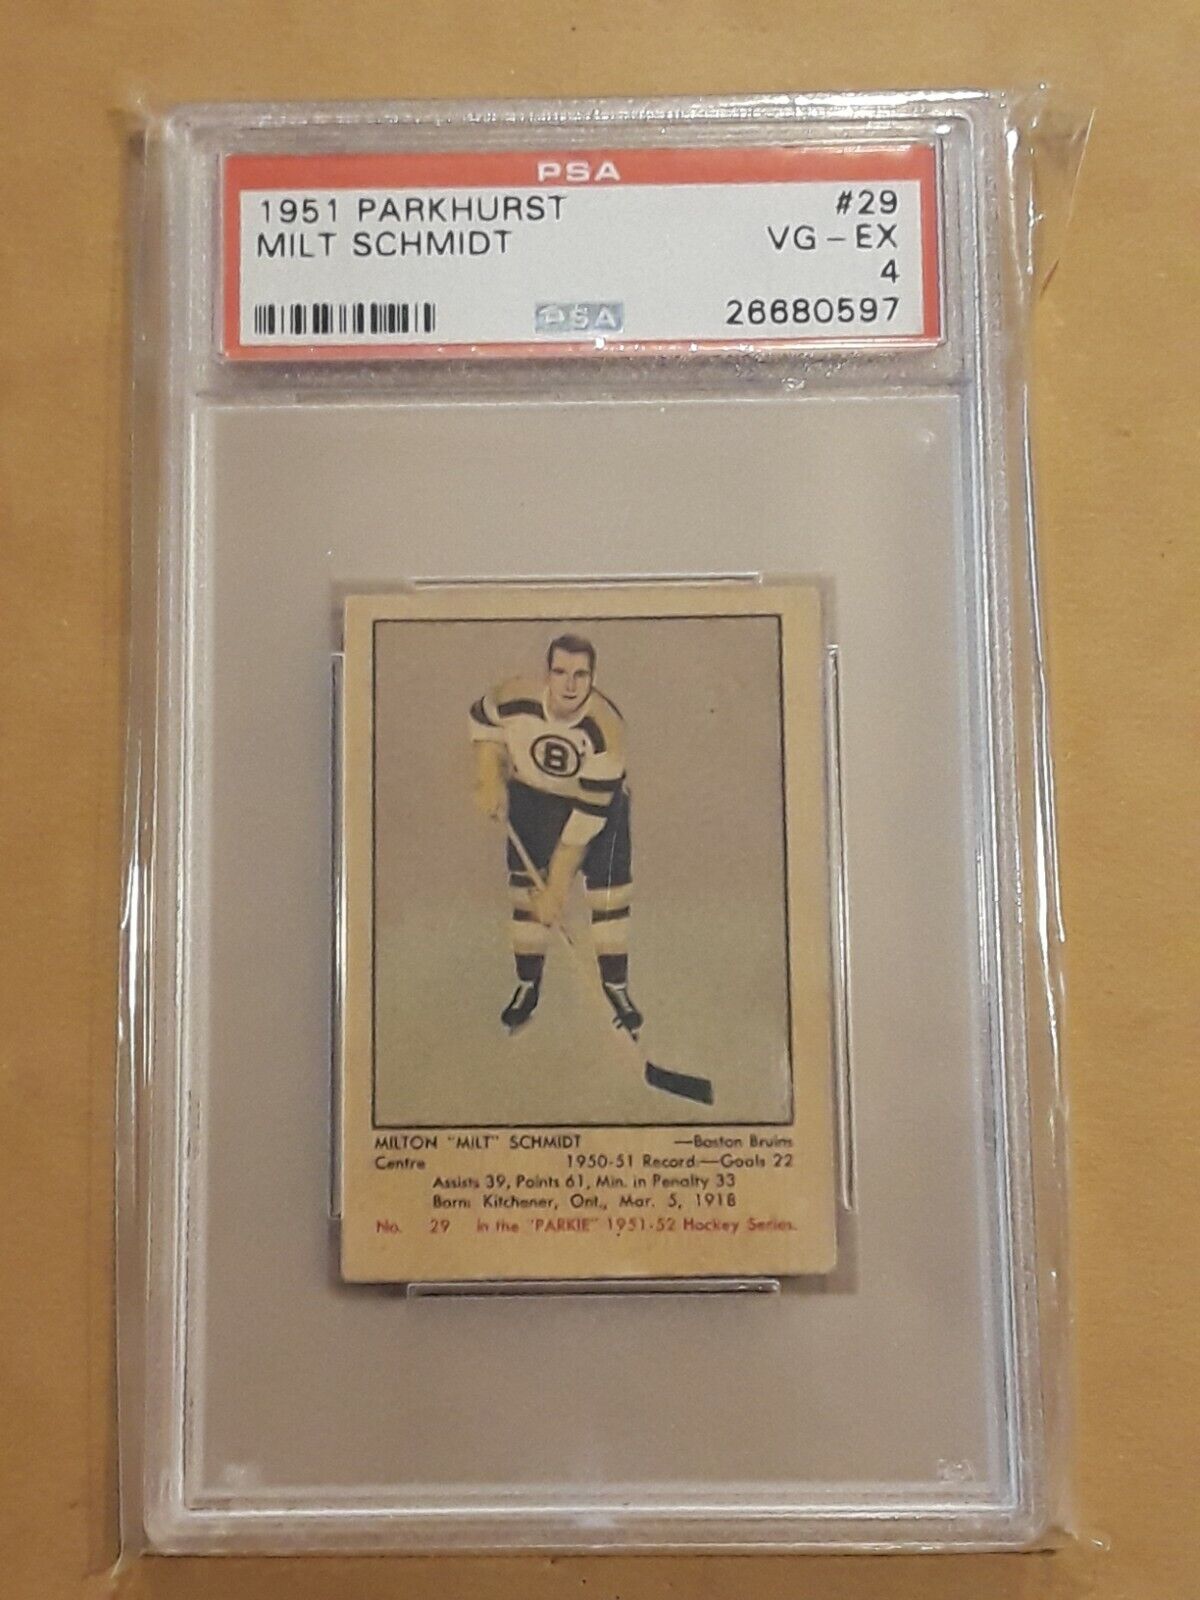 1951 Parkhurst Milt Schmidt PSA 4 Vg-Ex Boston Bruins